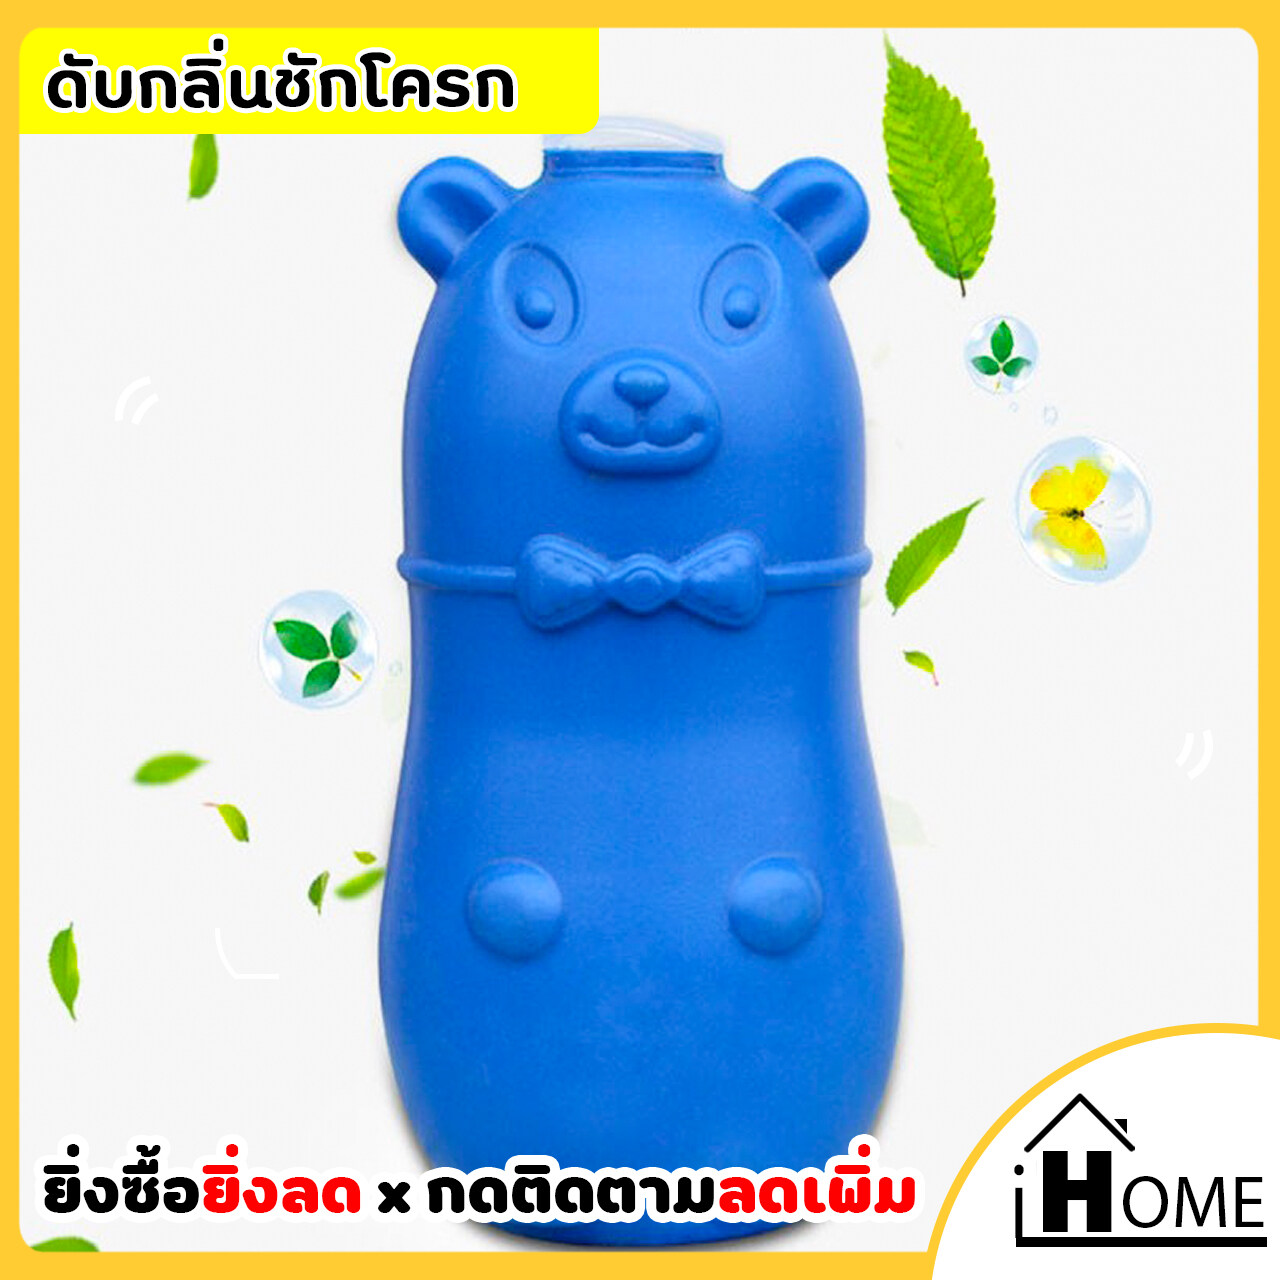 IHOME ปลีก/ส่ง 0122 ดับกลิ่นถังชักโครก น้องหมู น้องหมี ดับกลิ่นห้องน้ำ ชักโครก น้ำสีฟ้าระงับกลิ่นได้ดี ราคาถูก